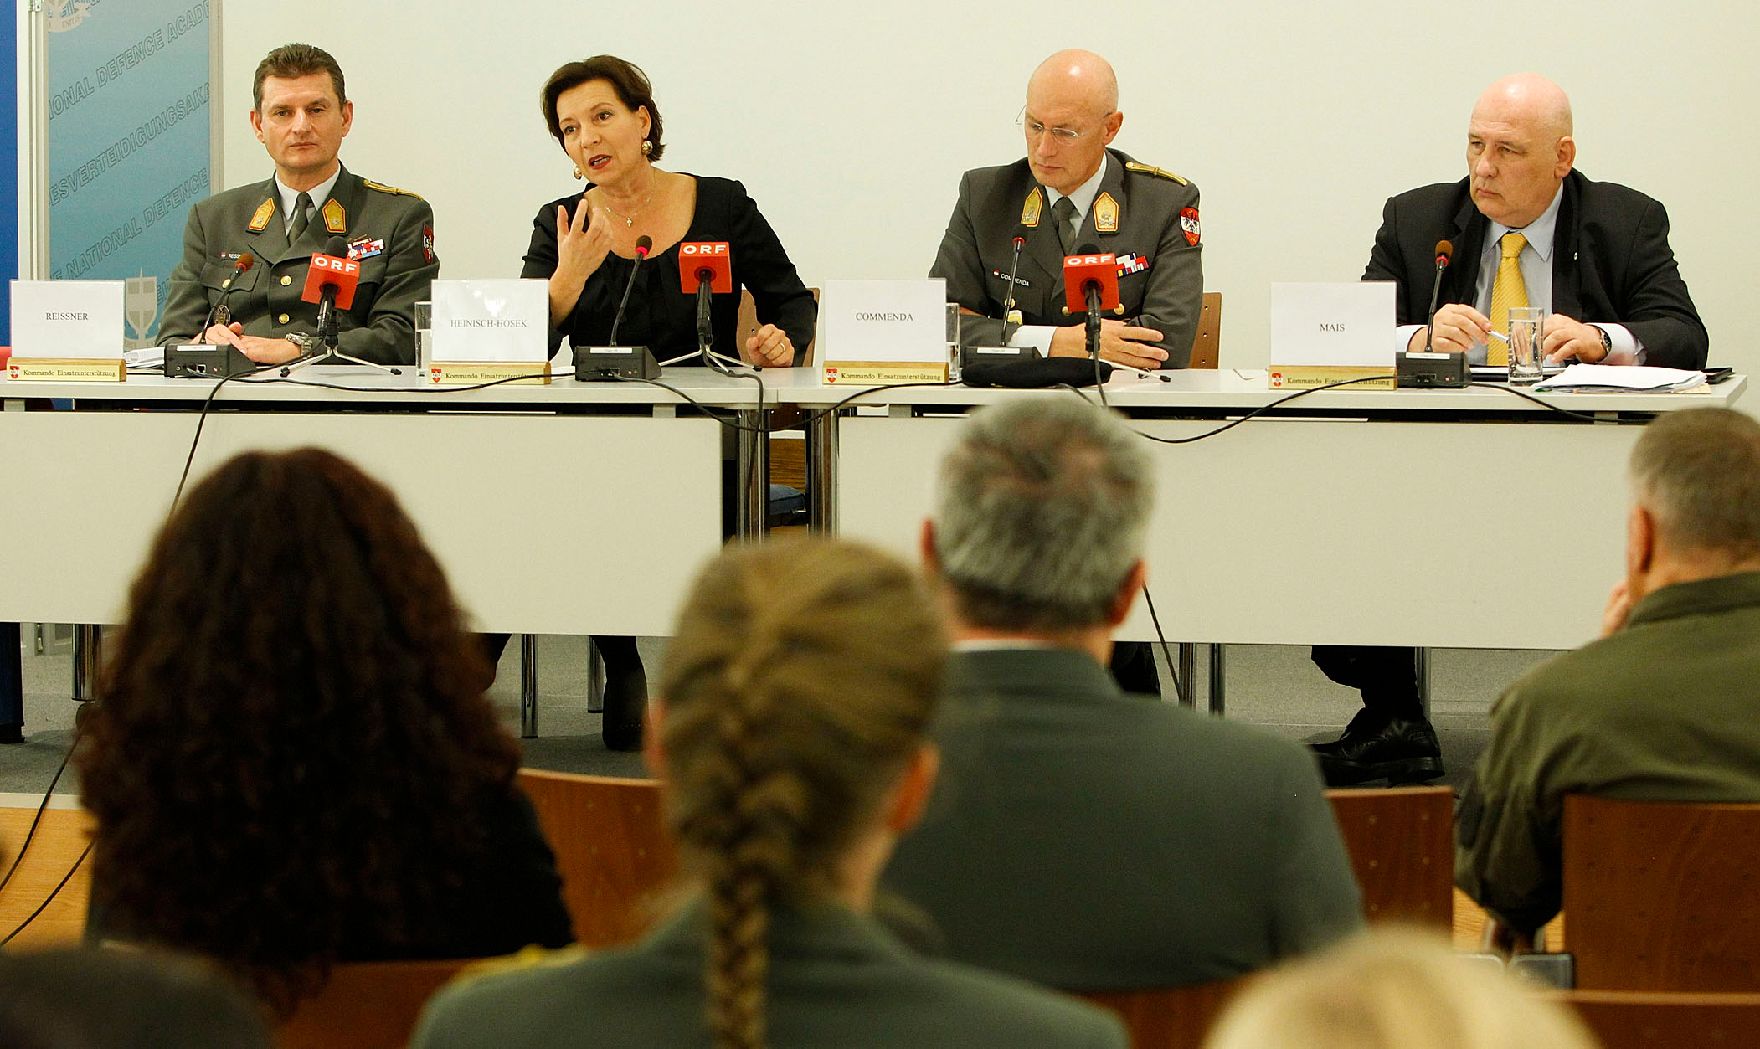 Am 12. Oktober 2011 sprach Frauenministerin Gabriele Heinisch-Hosek Abschlussworte beim Symposium "WoMen Serving Together" in der Landesverteidigungsakademie in Wien.